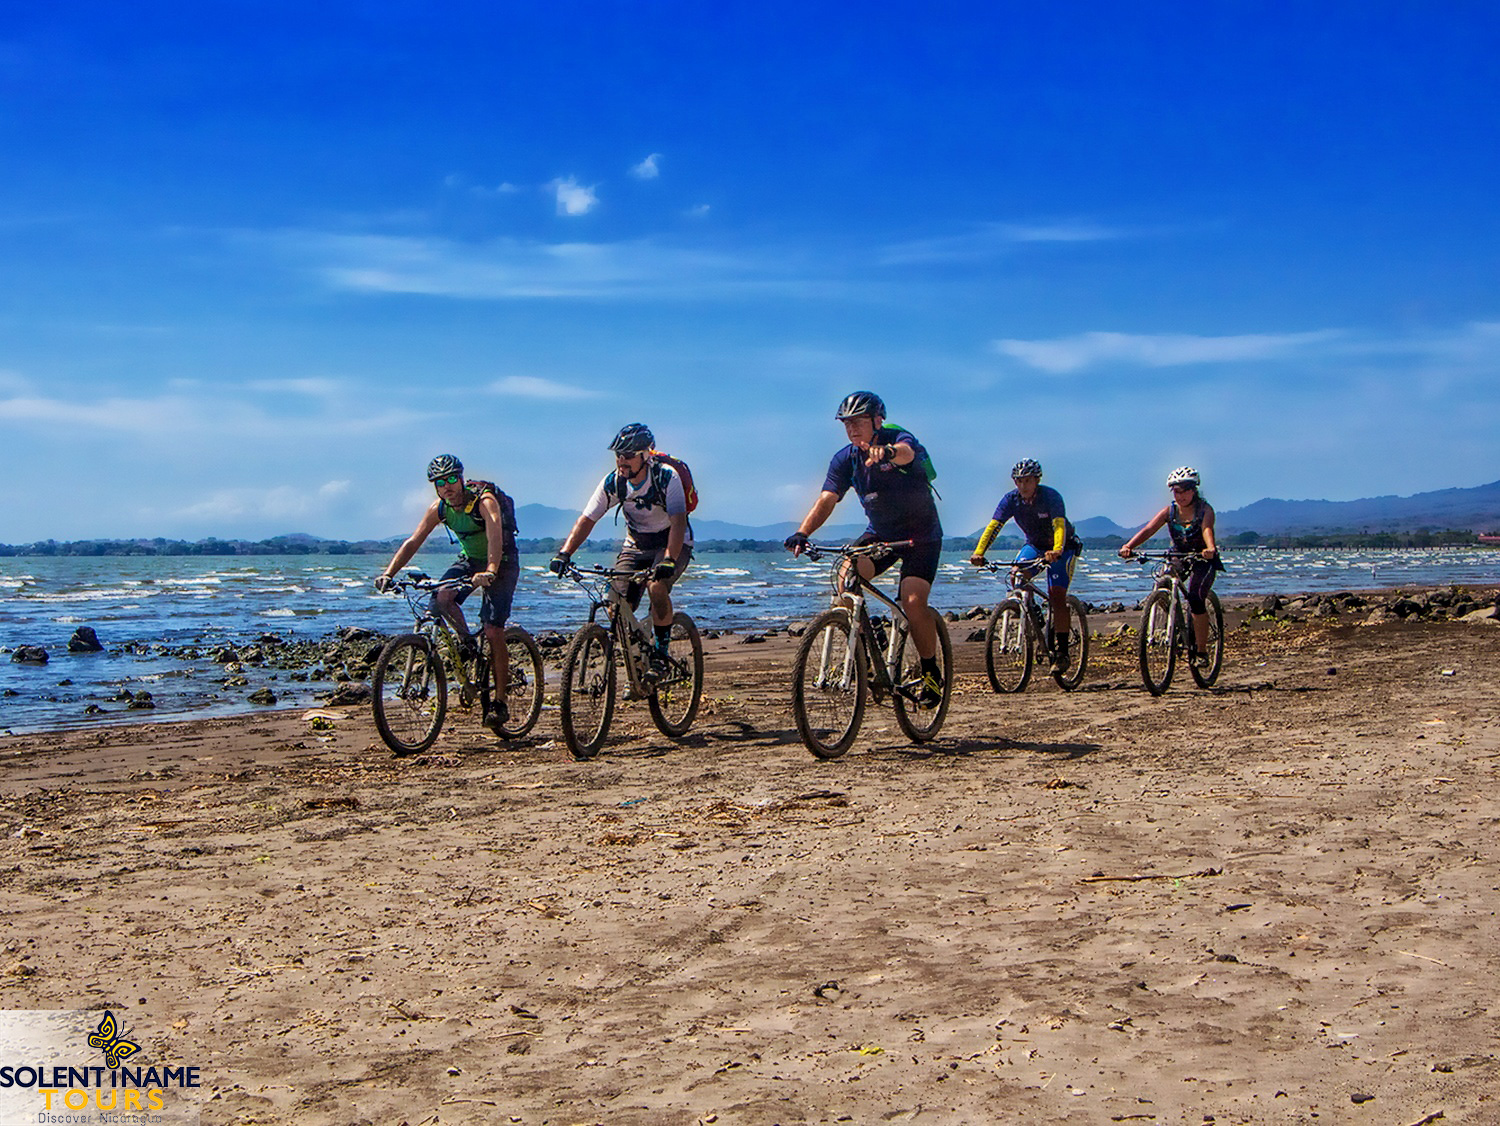 Nicaragua: GRANADA: Nicaragua See, El Lago de Nicaragua, Cocibolca, Las Isletas, Bombacho, Fahrradtour